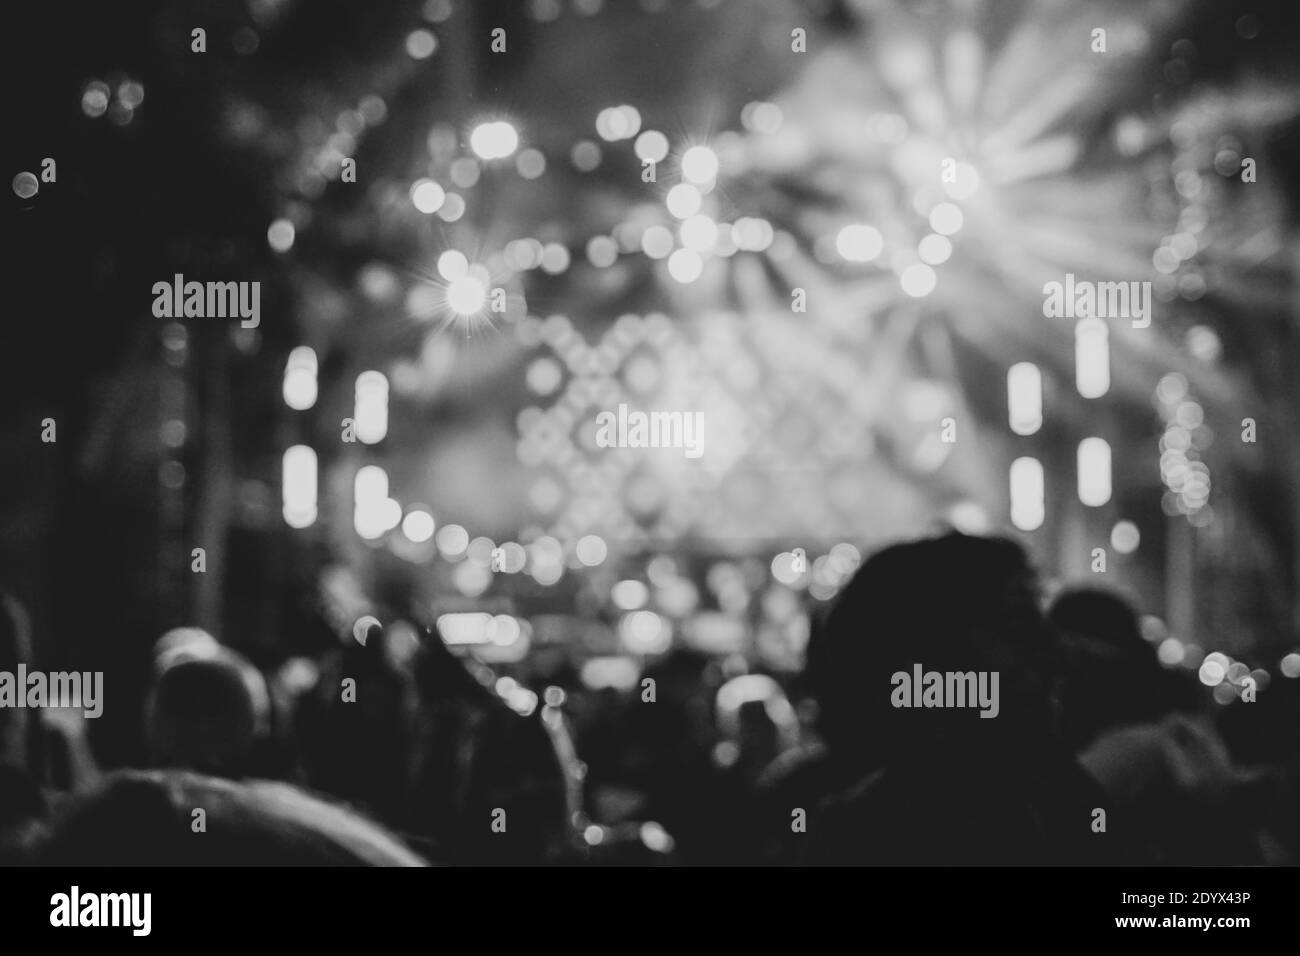 Feiern Karnevalsparty , verschwommen Nachtclub Party Musik tanzen Ton , Party Menschen verschwommen Hintergrund. Schwarzweiß-Bild. Stockfoto